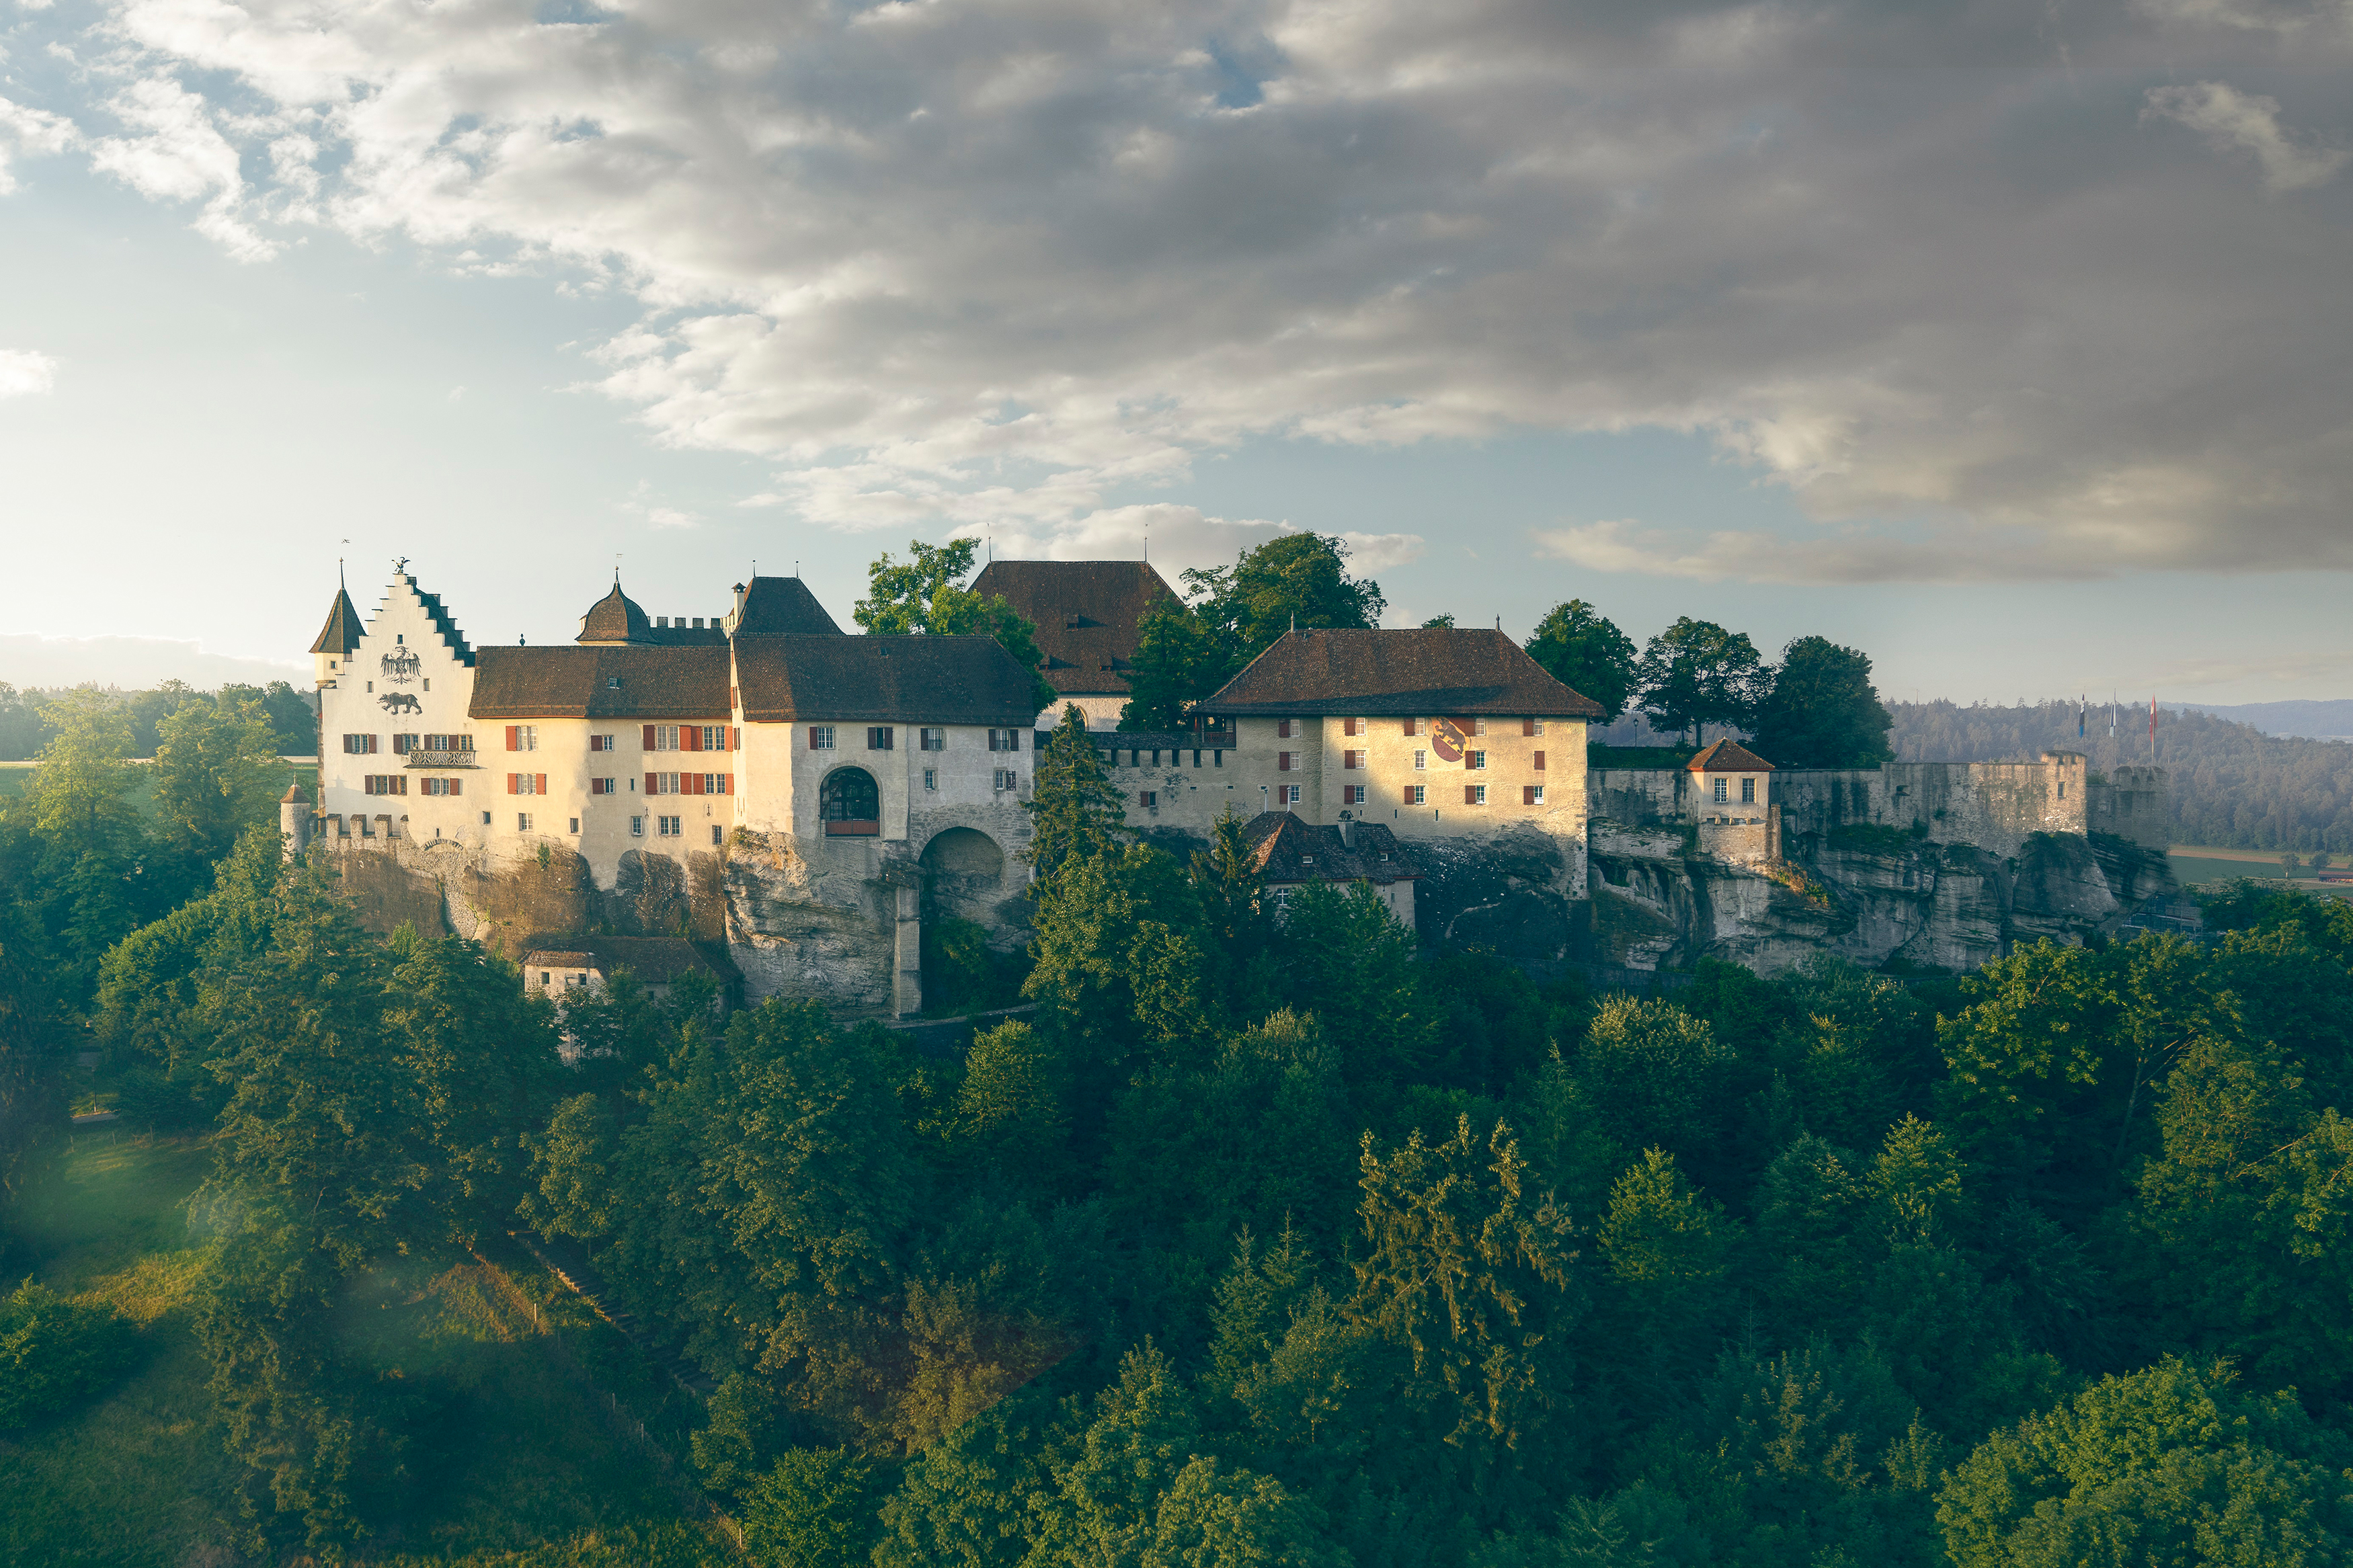 Luftaufnahme von Schloss Lenzburg